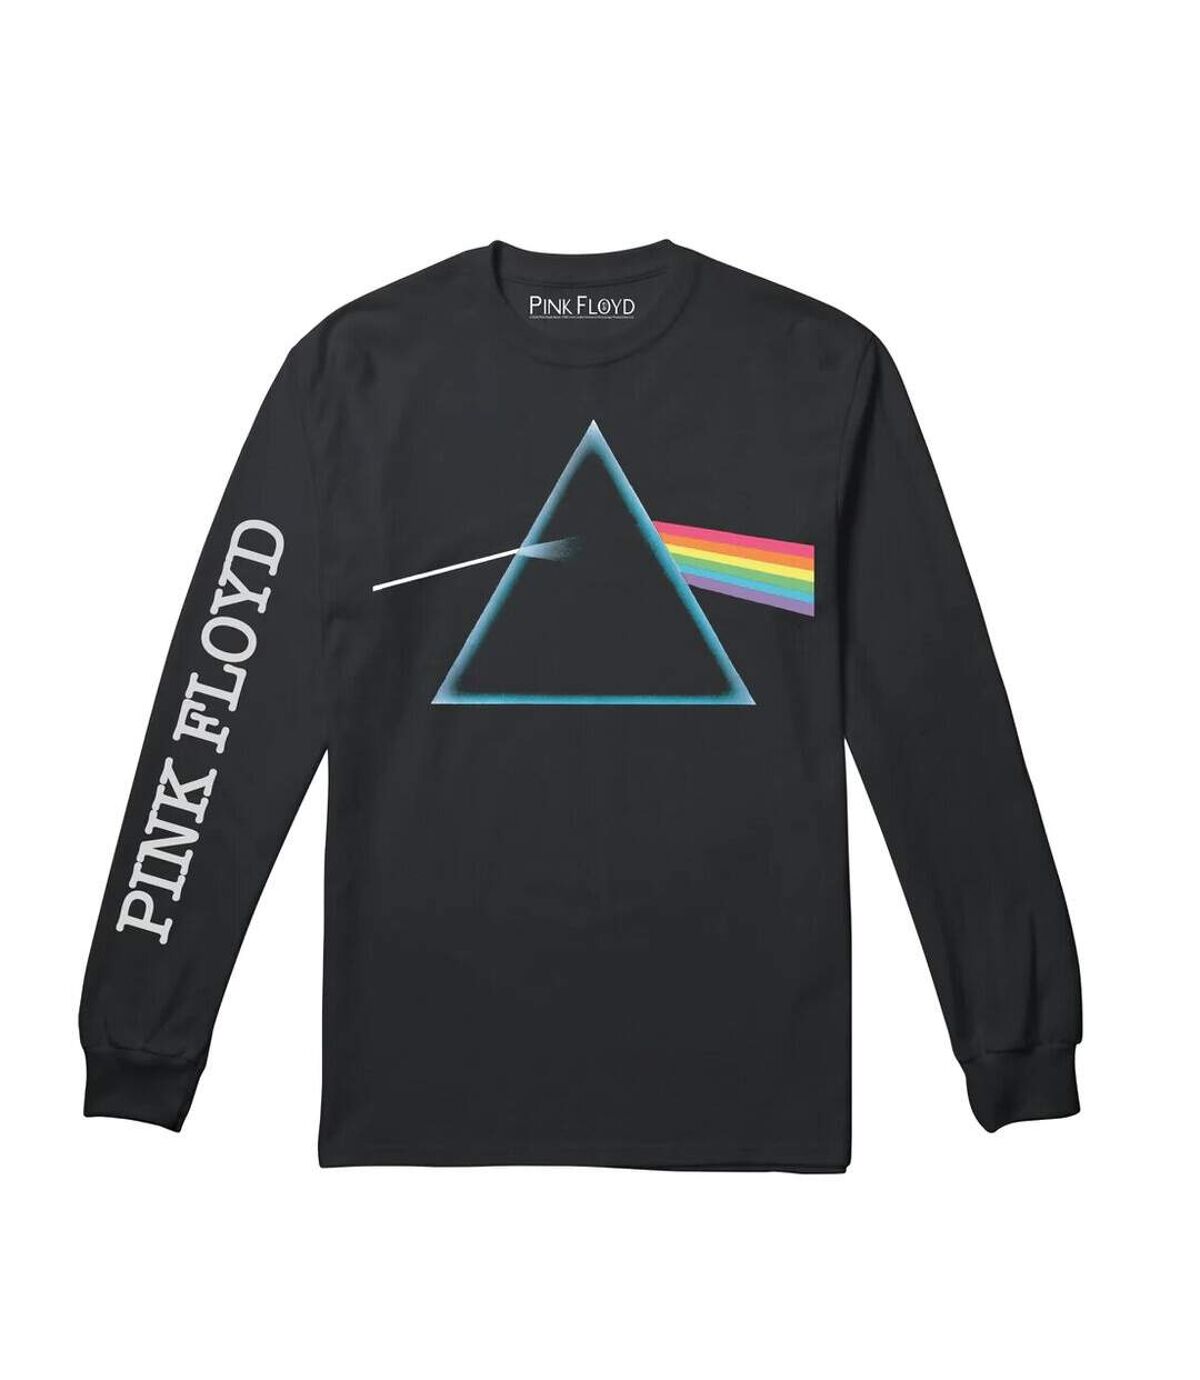 Pink Floyd T-shirt à manches longues Prism pour hommes (Noir) - UTTV895